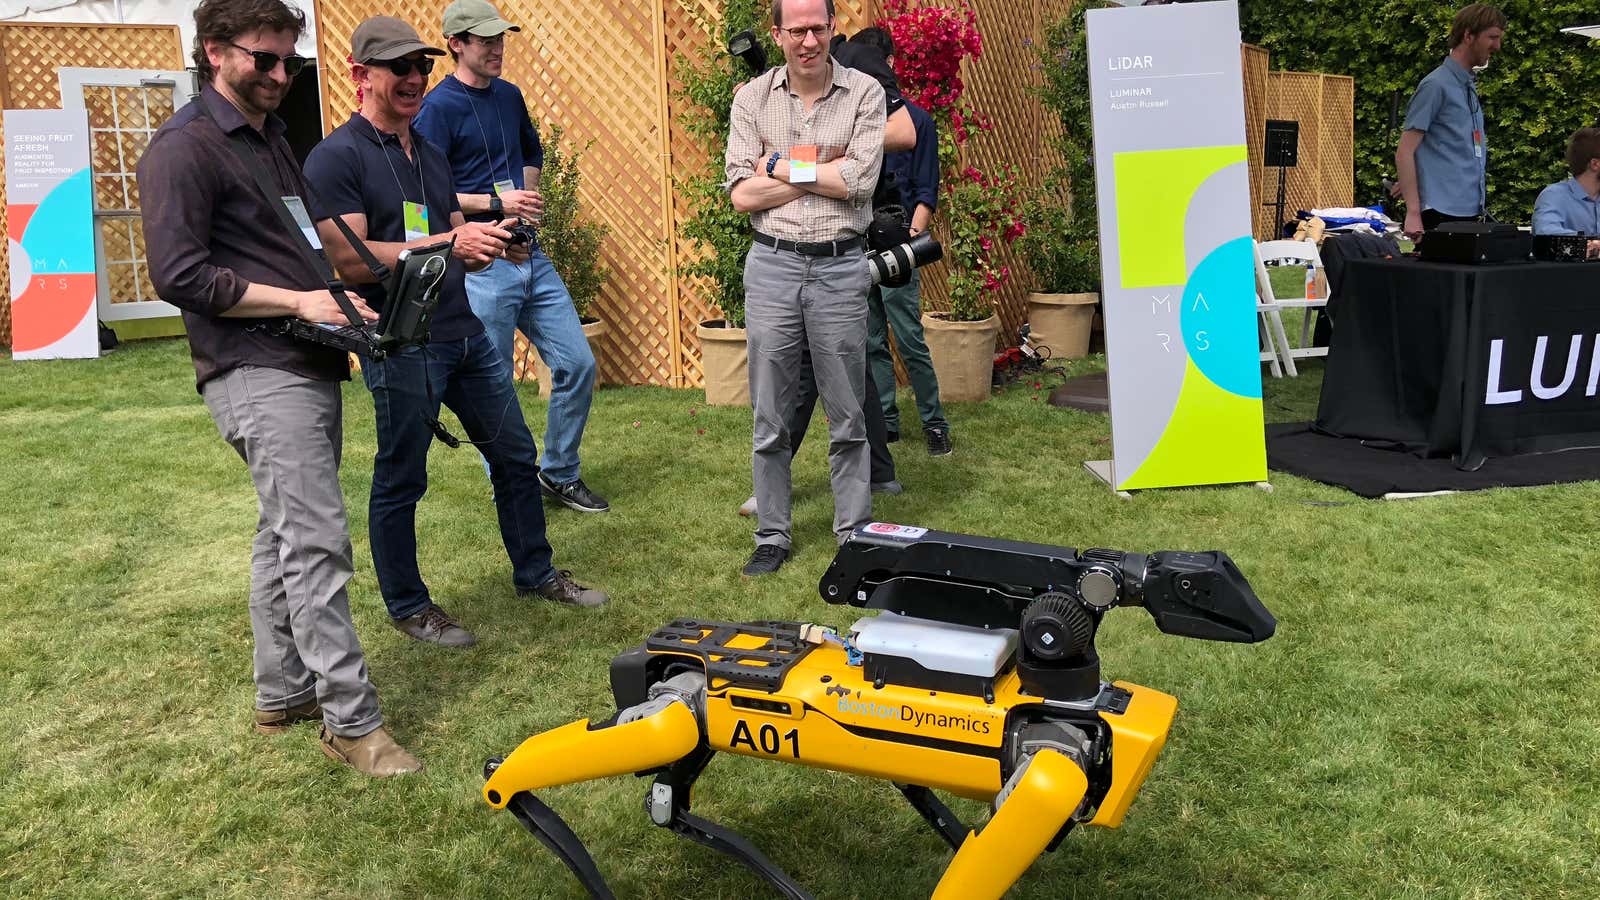 Jeff Bezos Pilots a Giant Robot